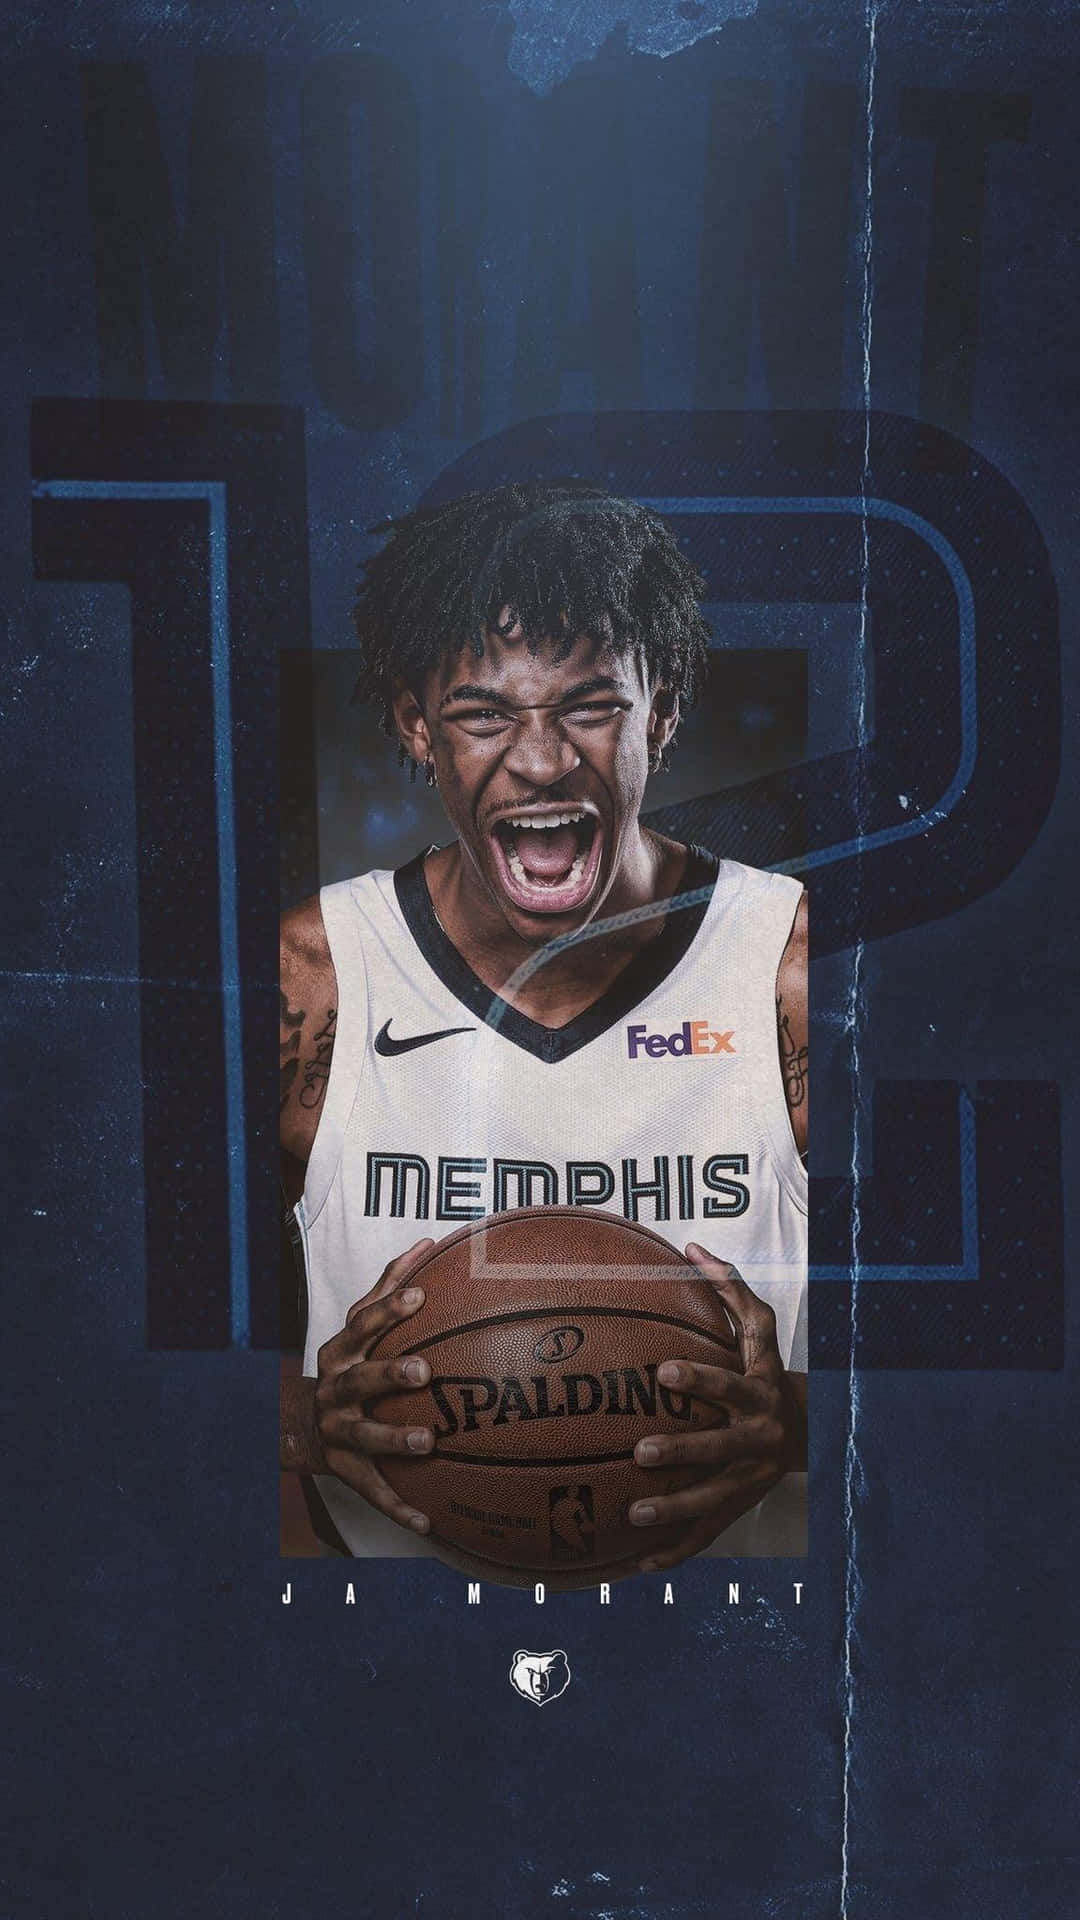 Einposter Mit Dem Bild Eines Basketballspielers Wallpaper